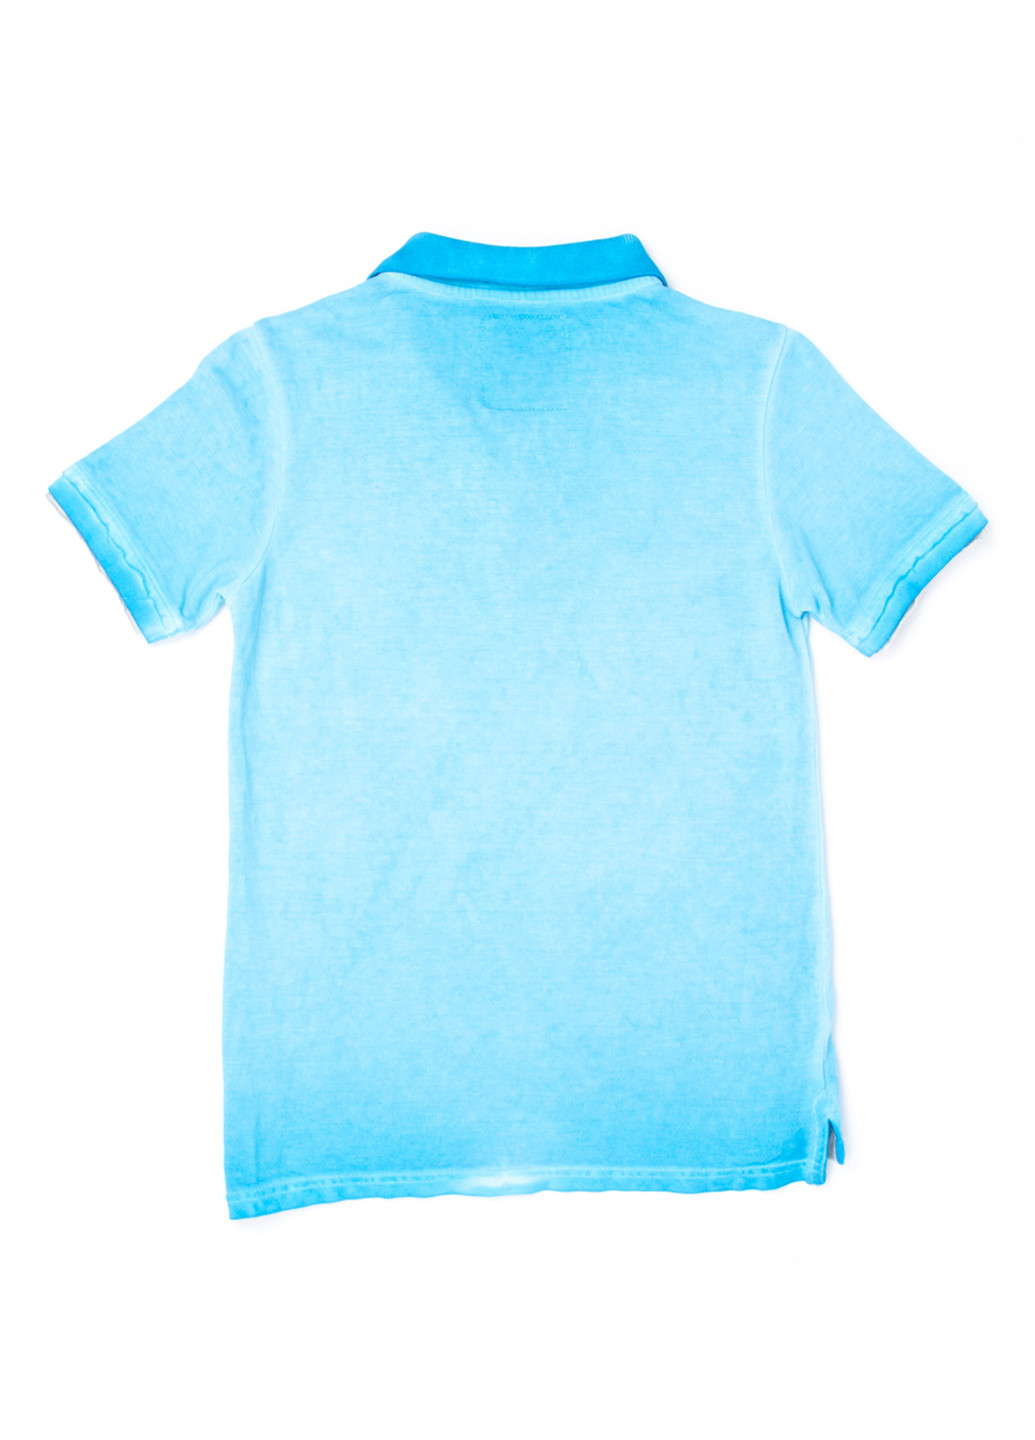 Бирюзовая детская футболка-поло для мальчика Vingino однотонная